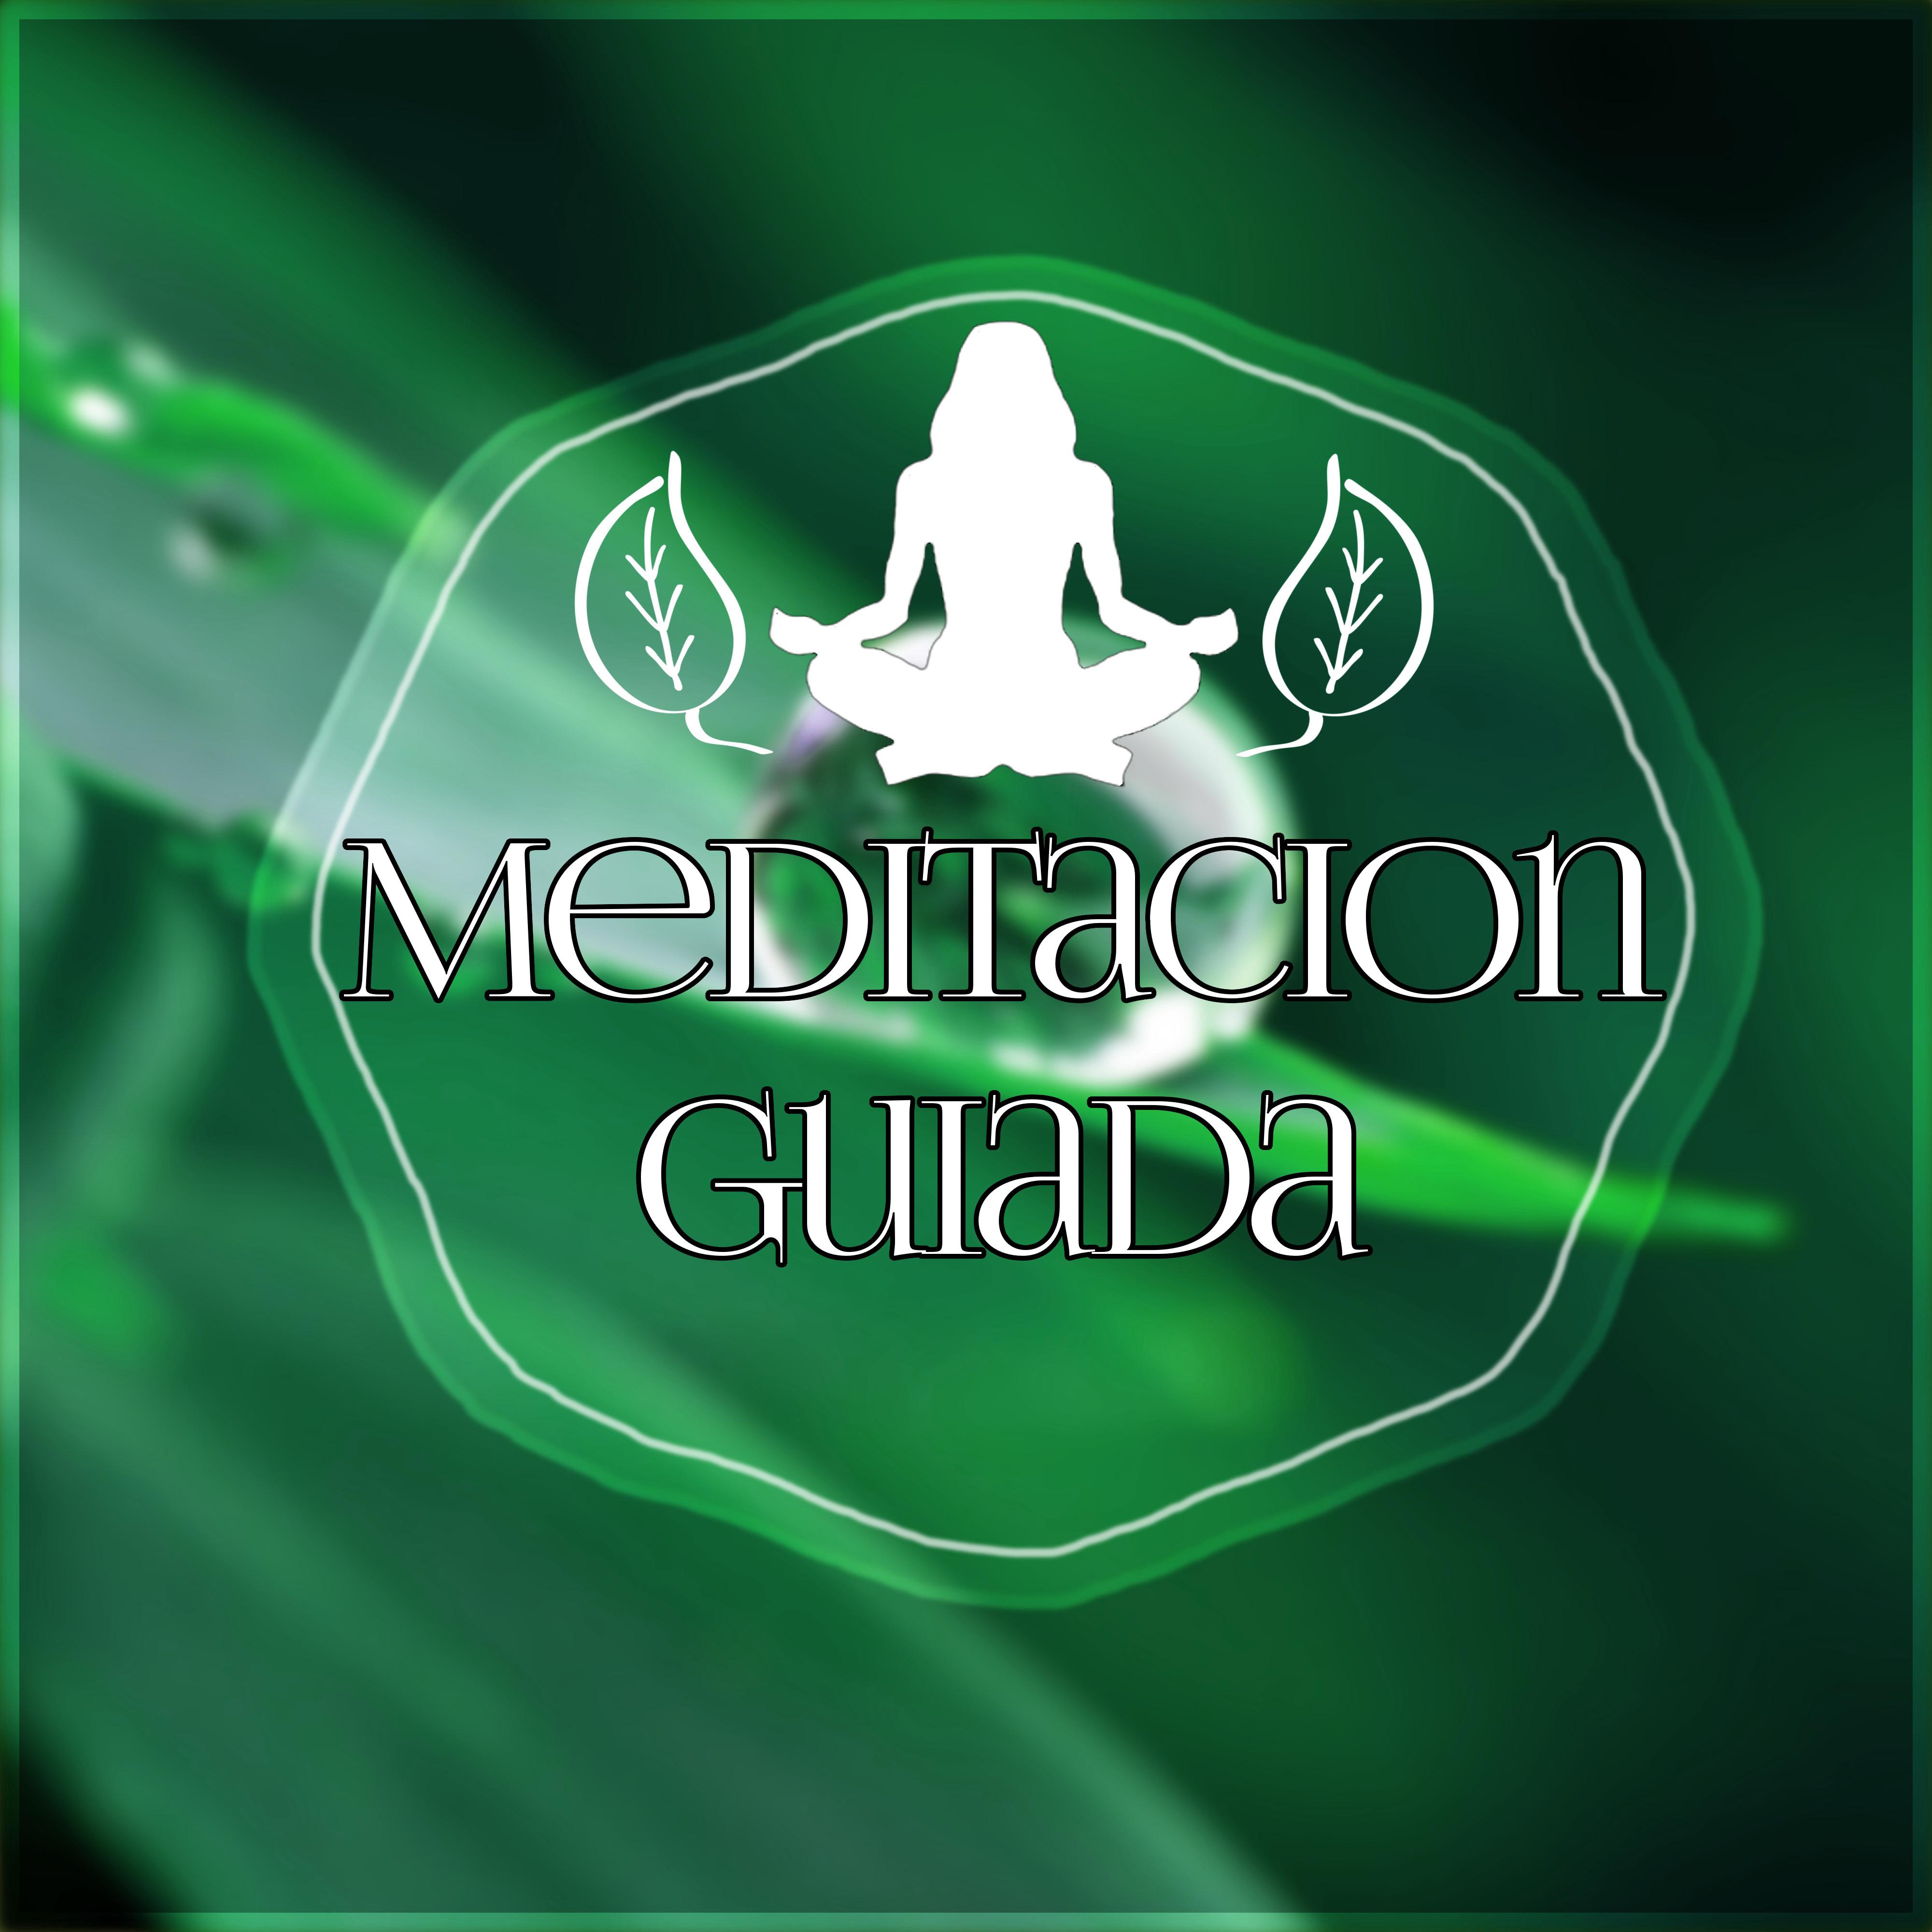 Meditacion Guiada – Canciones para Relajarse y Meditar, Musica New Age de Reiki & para Meditacion, Musica de Fondo